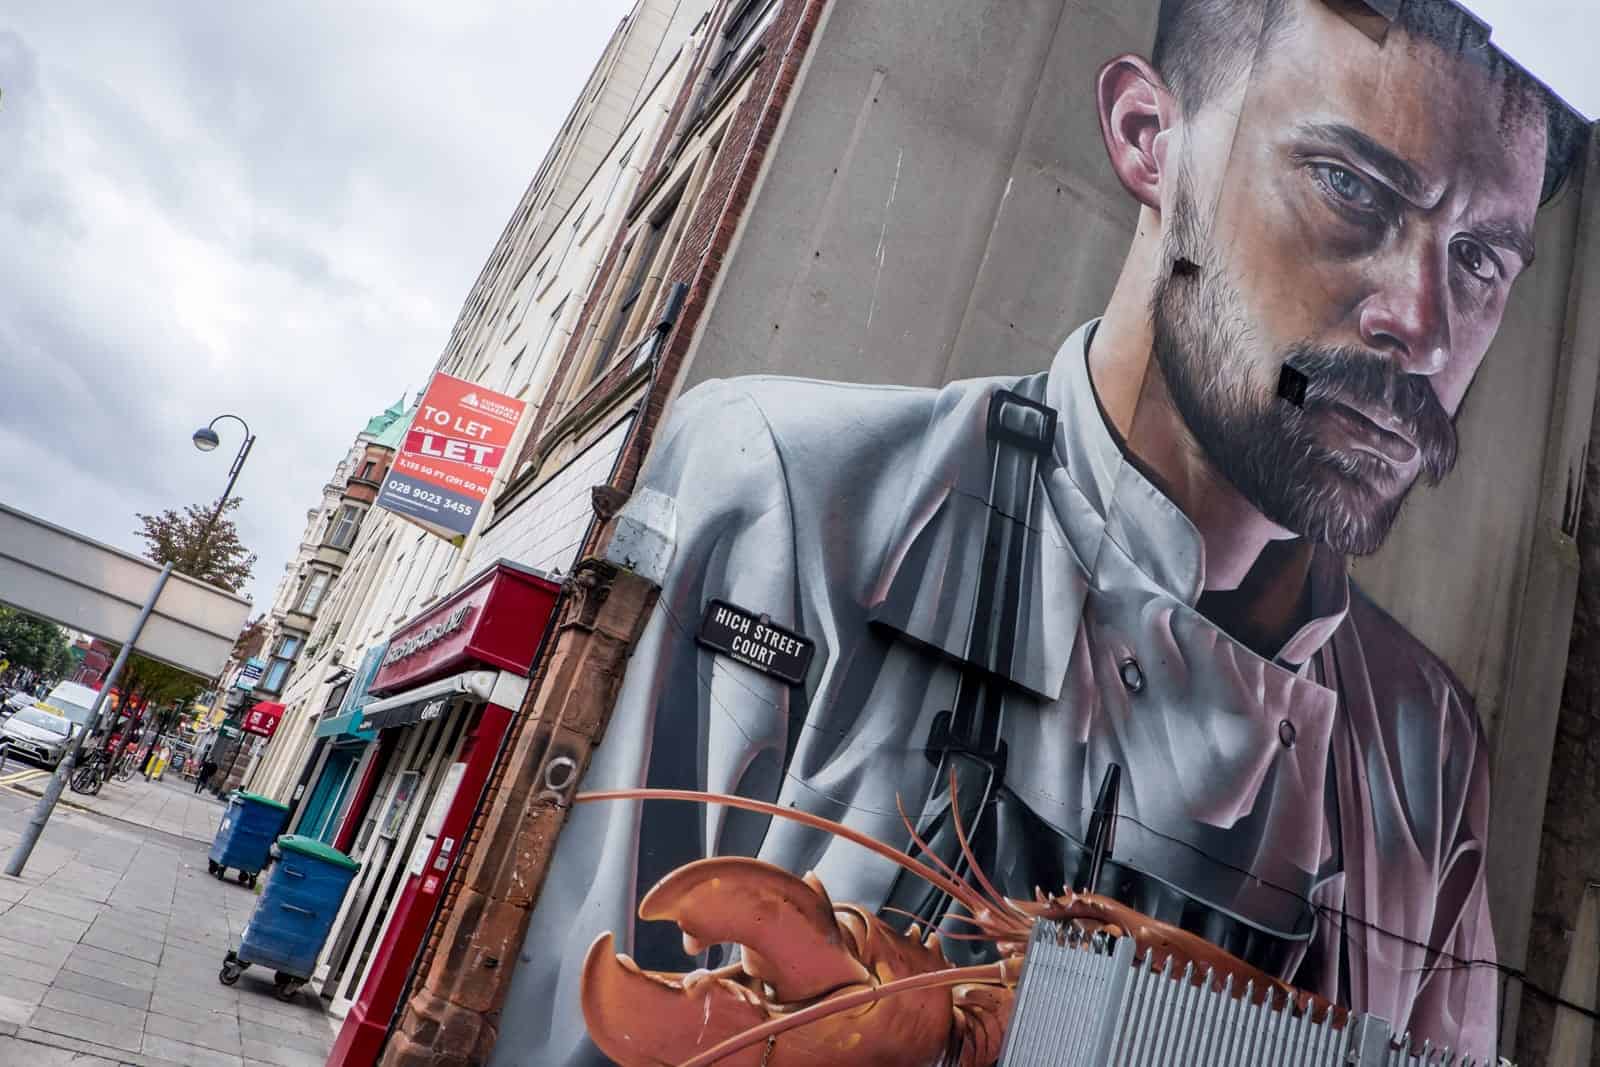 Huge lobster Street Art mural in Belfast Northern Ireland